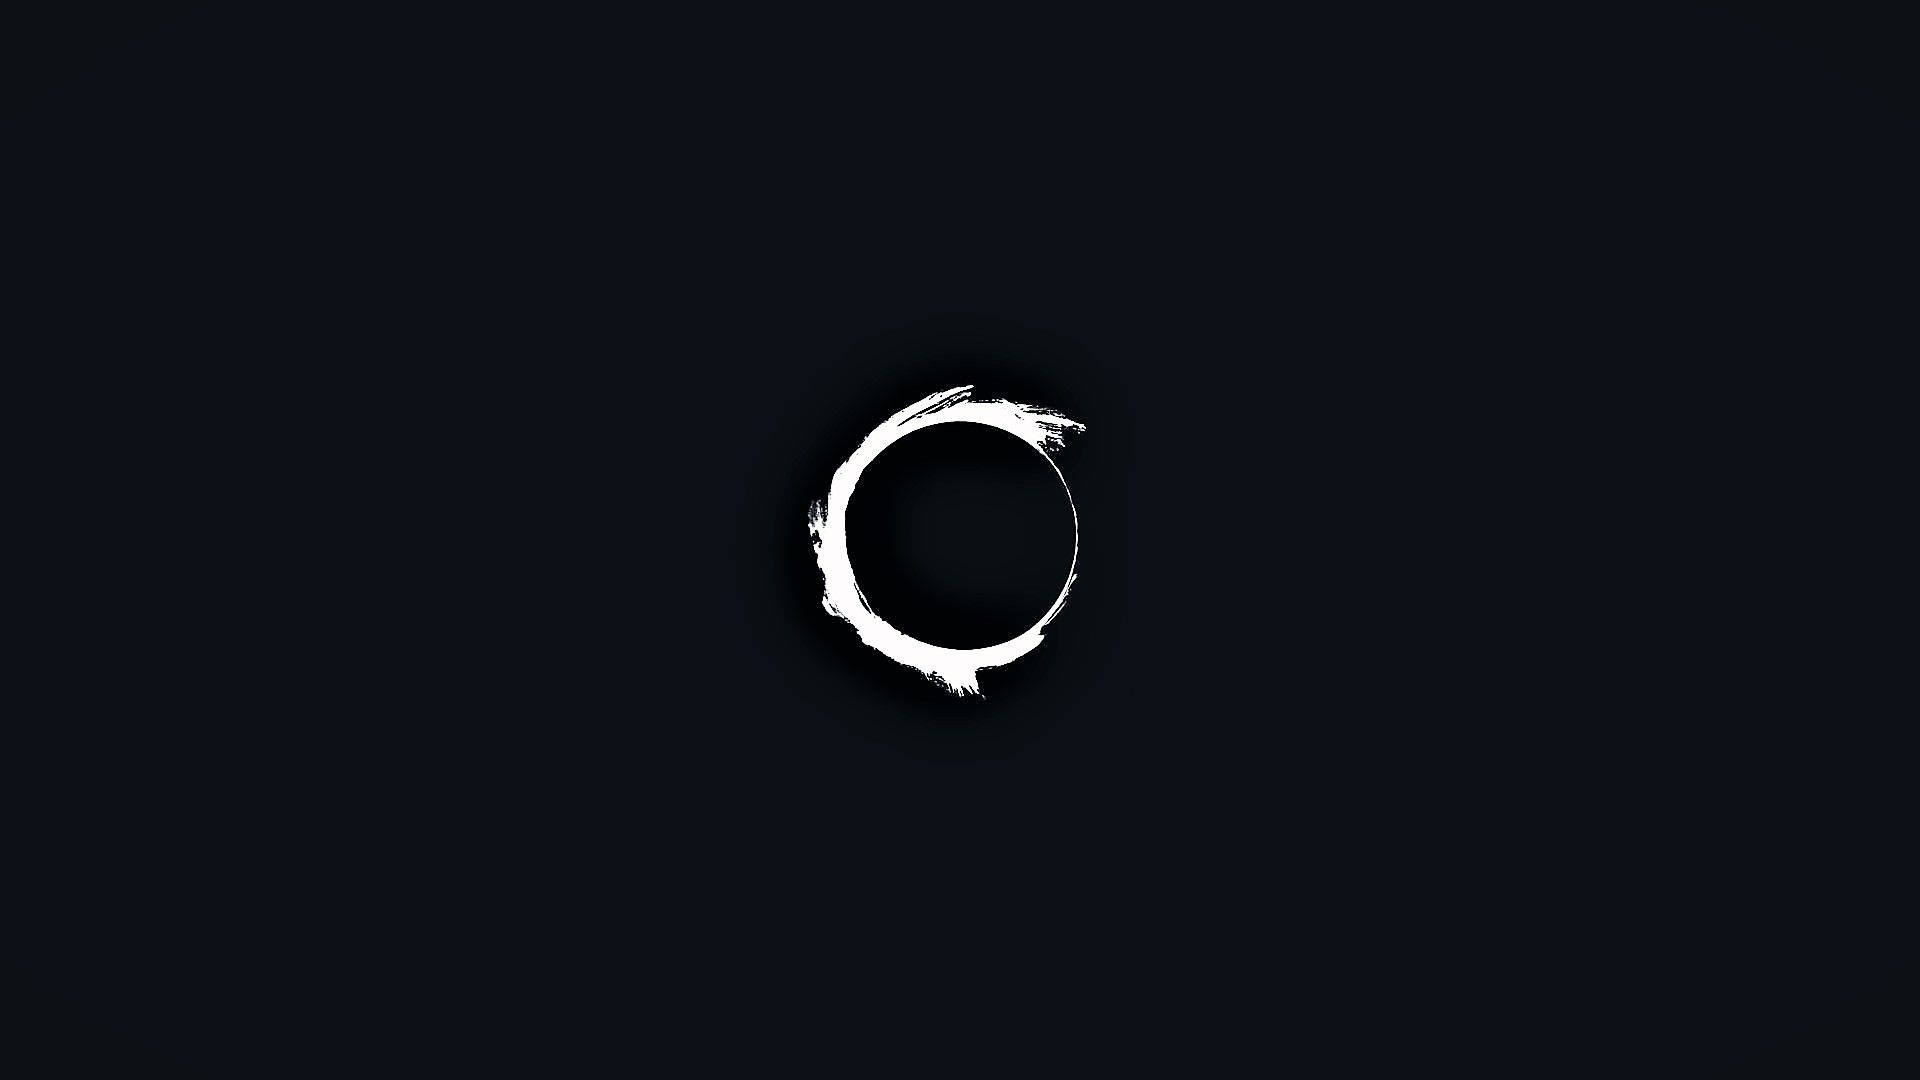 Dark Minimalist Eclipse Background